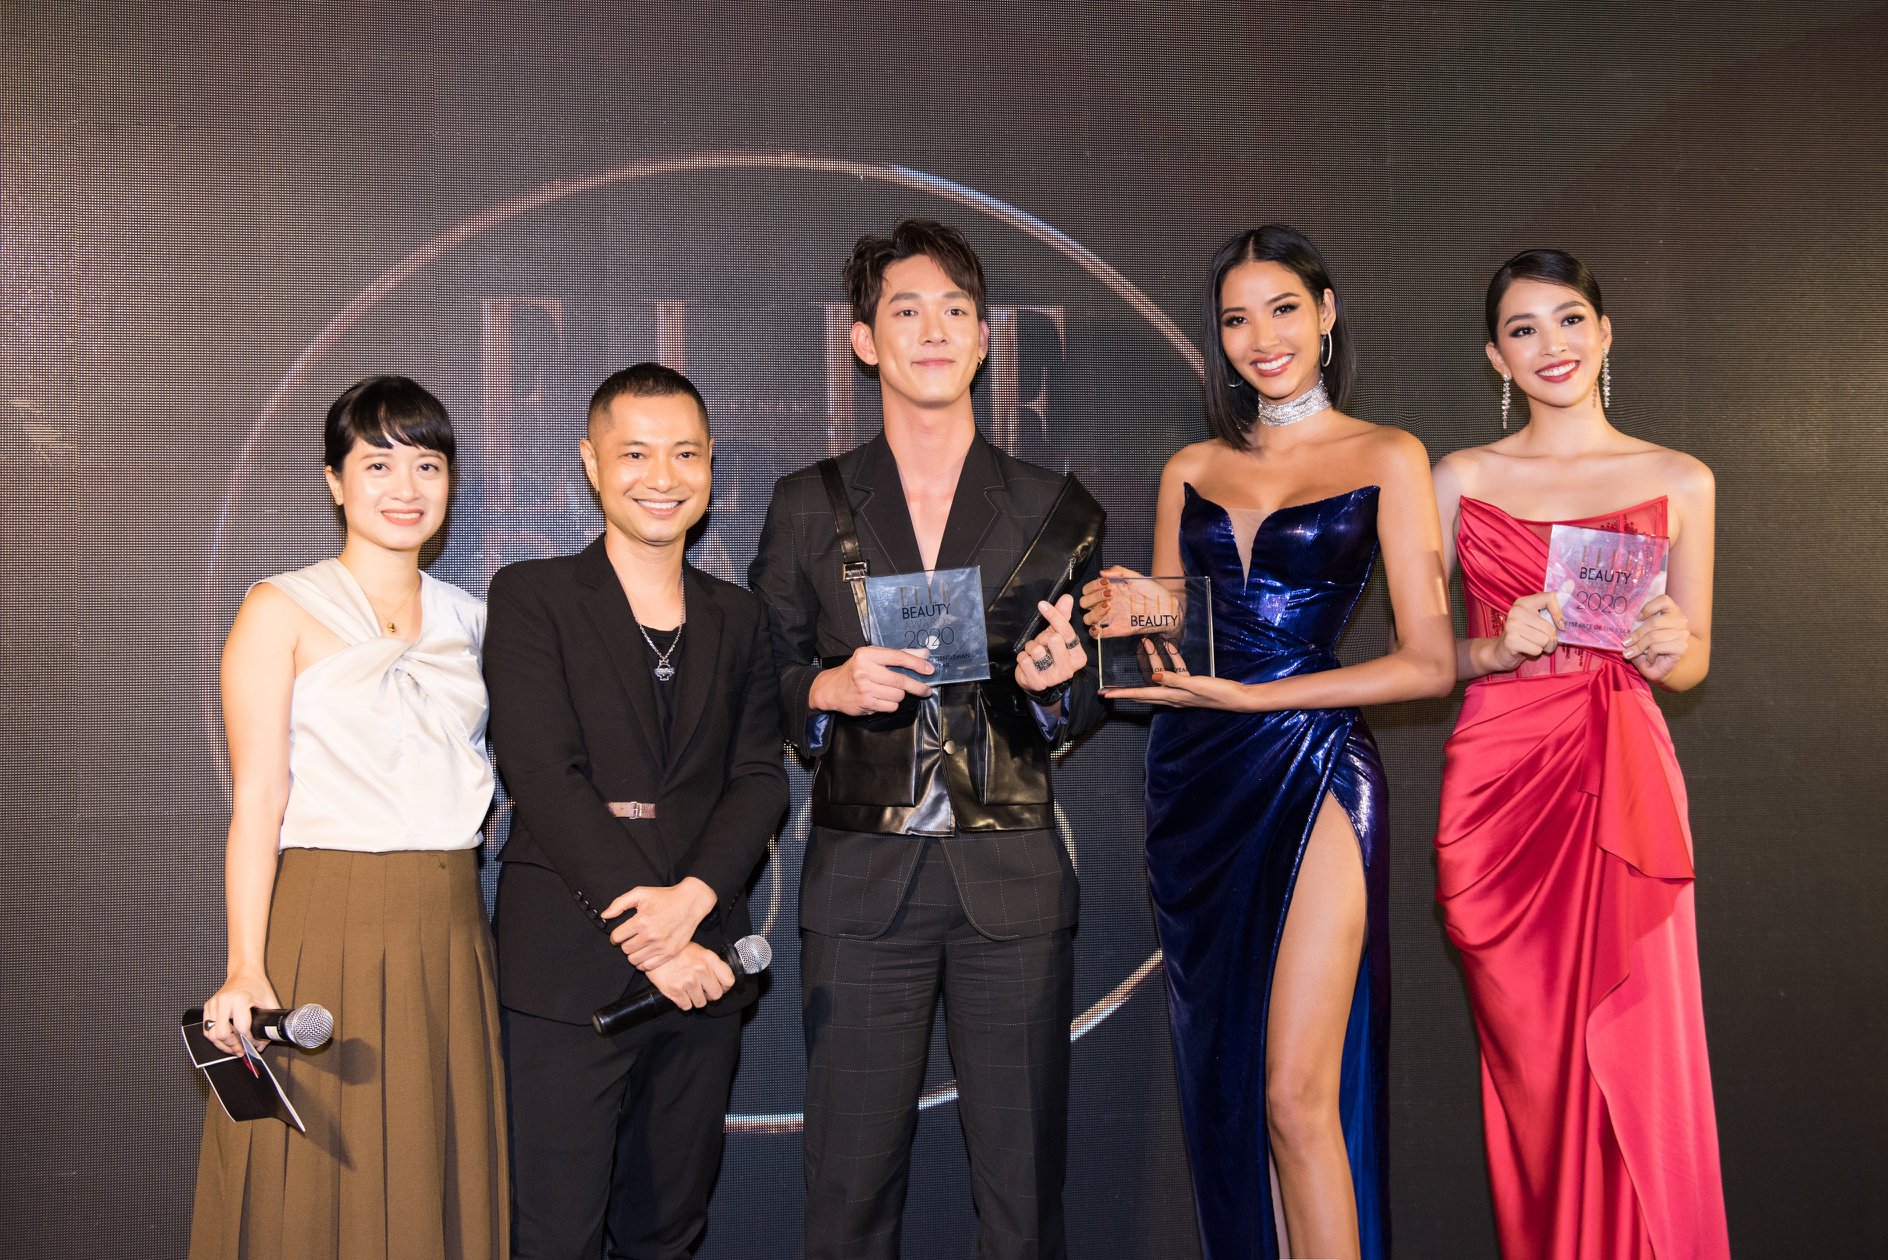 Á hậu Hoàng Thùy được vinh danh 'Best body of the year' tại Elle Style Awards 2019 - Ảnh 1